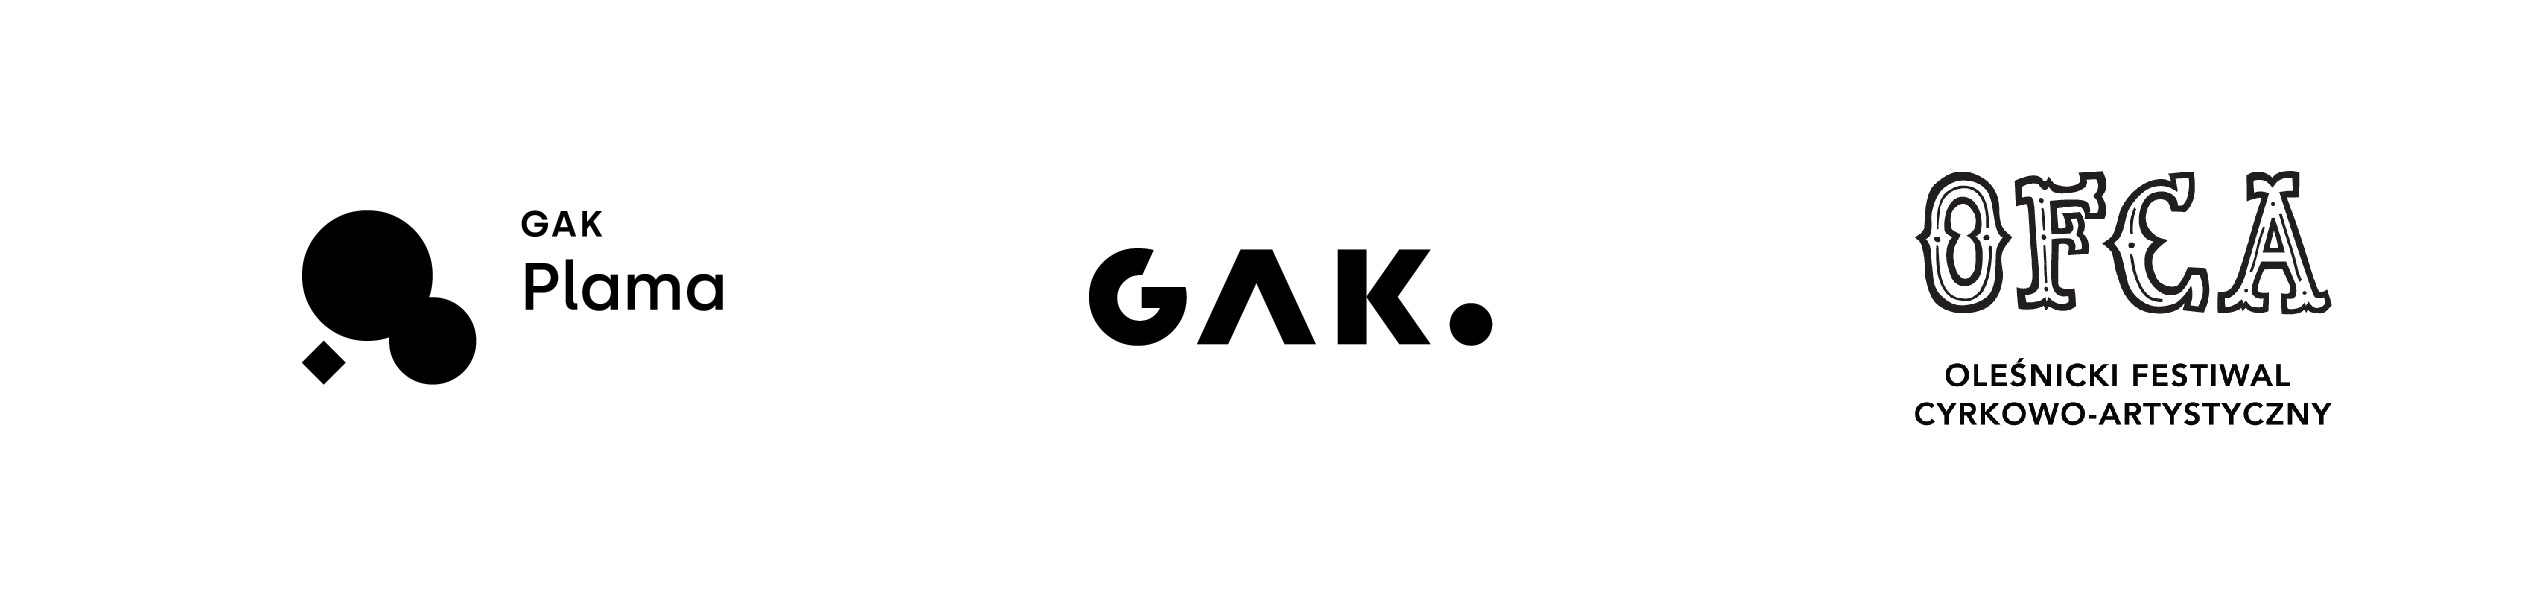 Logo GAK Plama, GAK, OFCA.